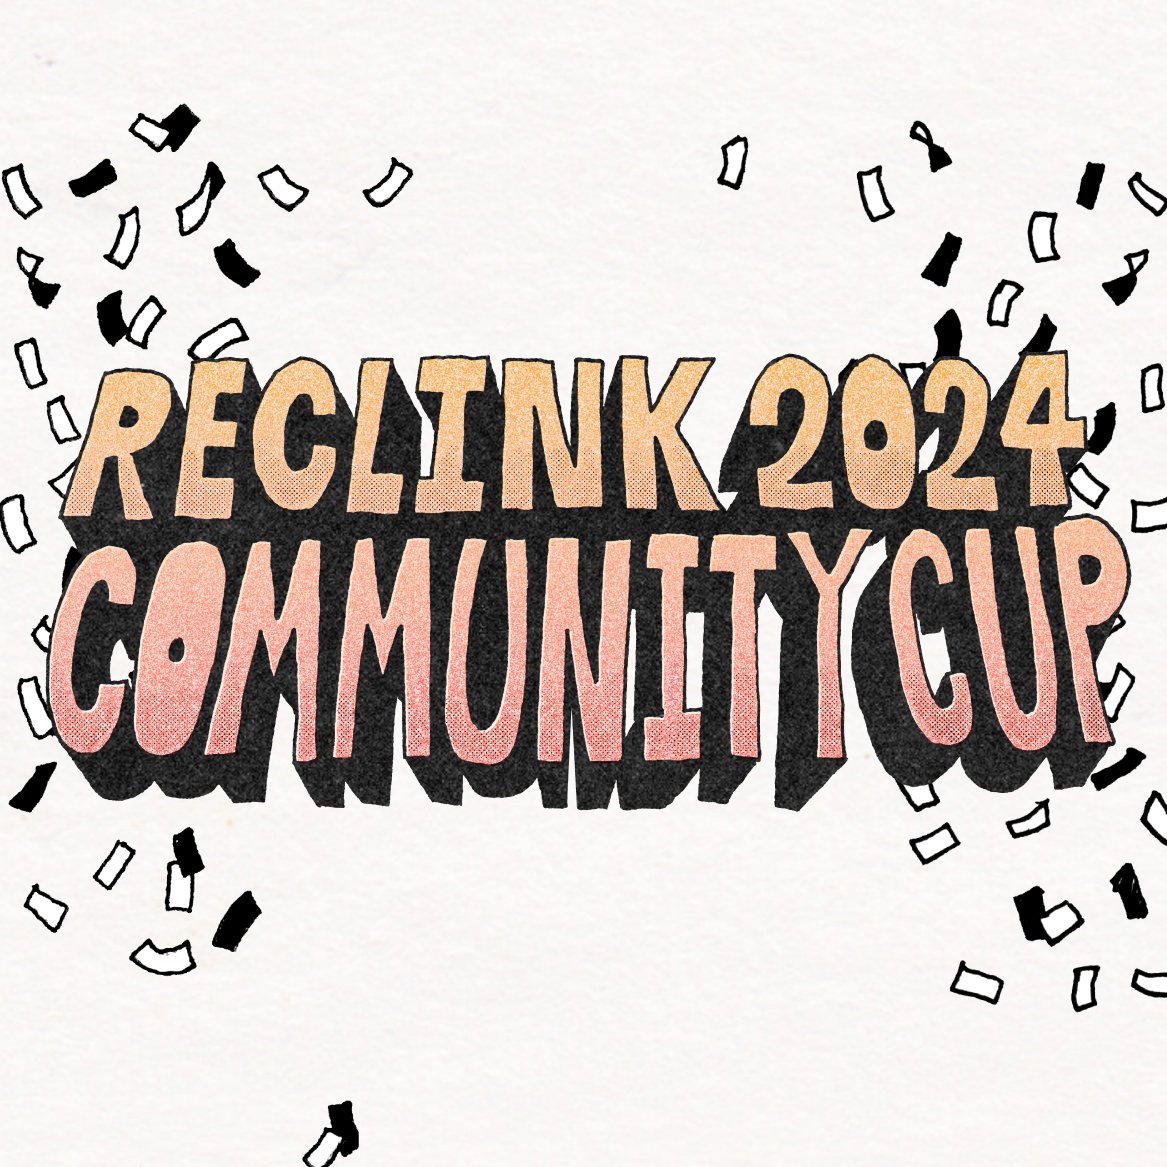 Reclink Community Cup